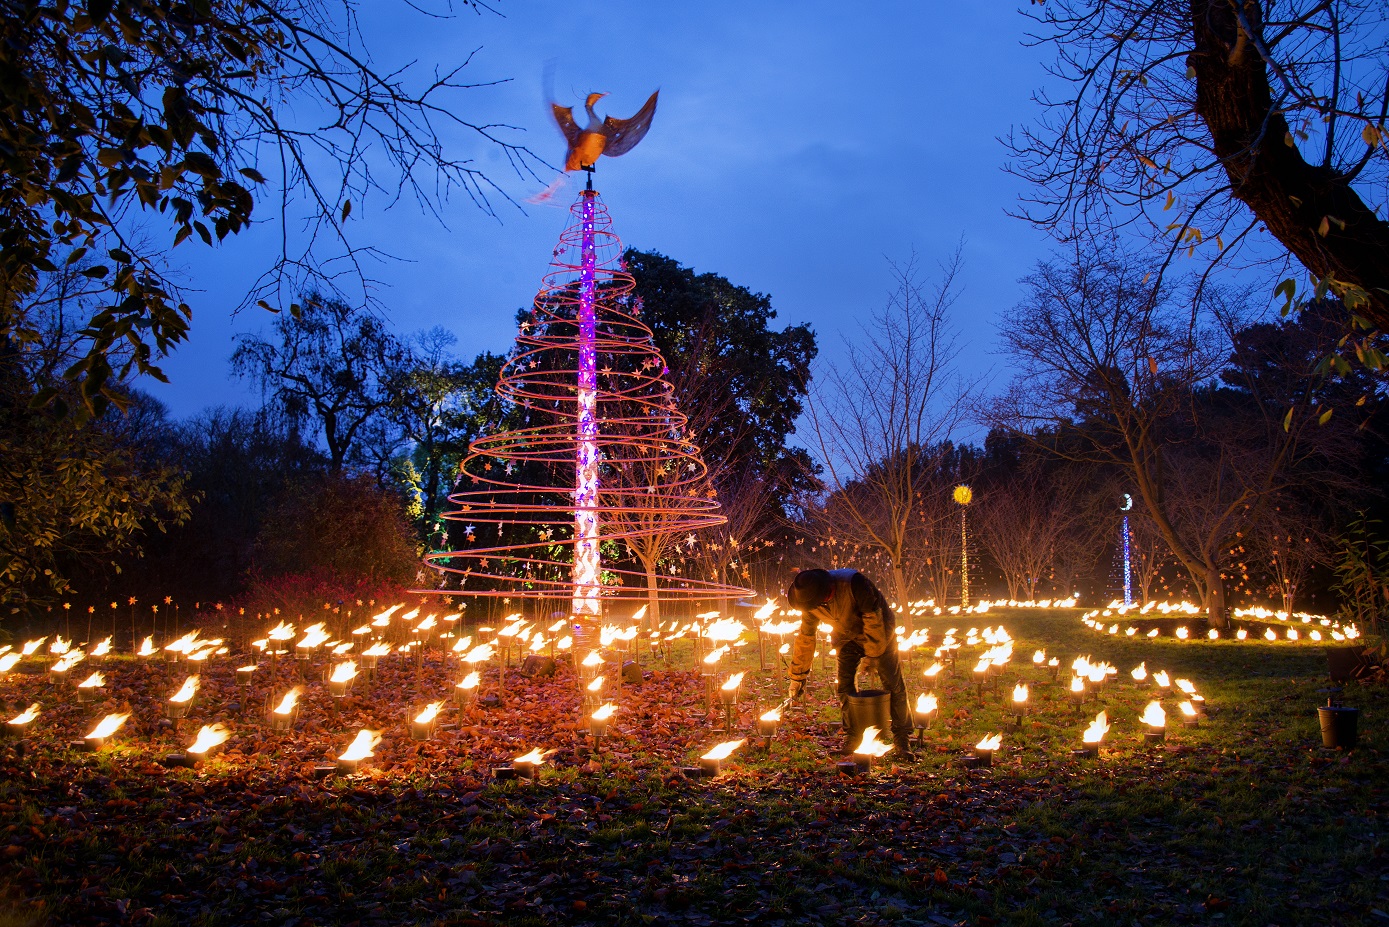 Kew Gardens at Christmas